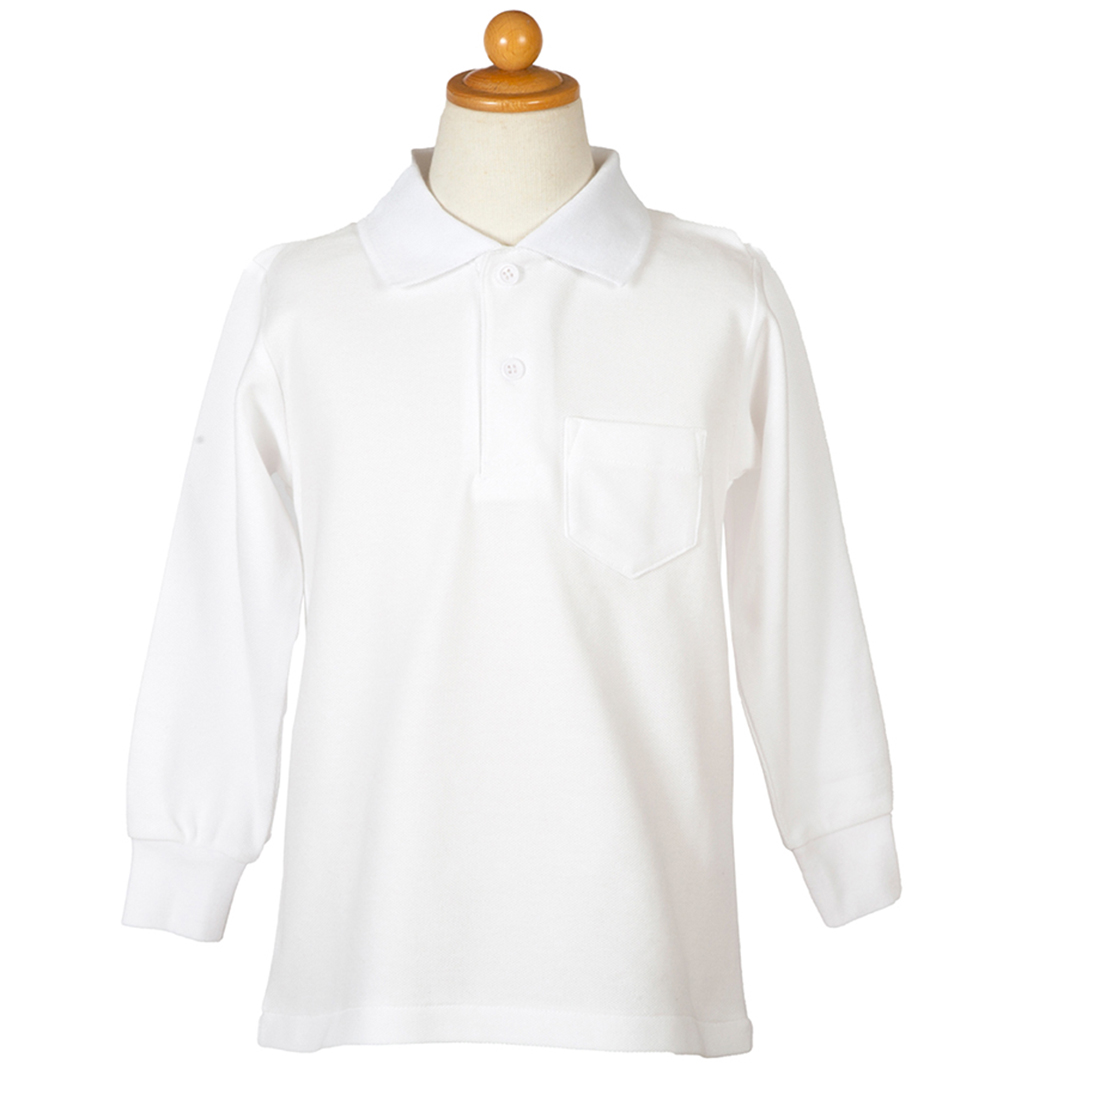 幼稚園受験用 長袖かのこポロシャツ 白 90・95サイズ お着替えしやすい